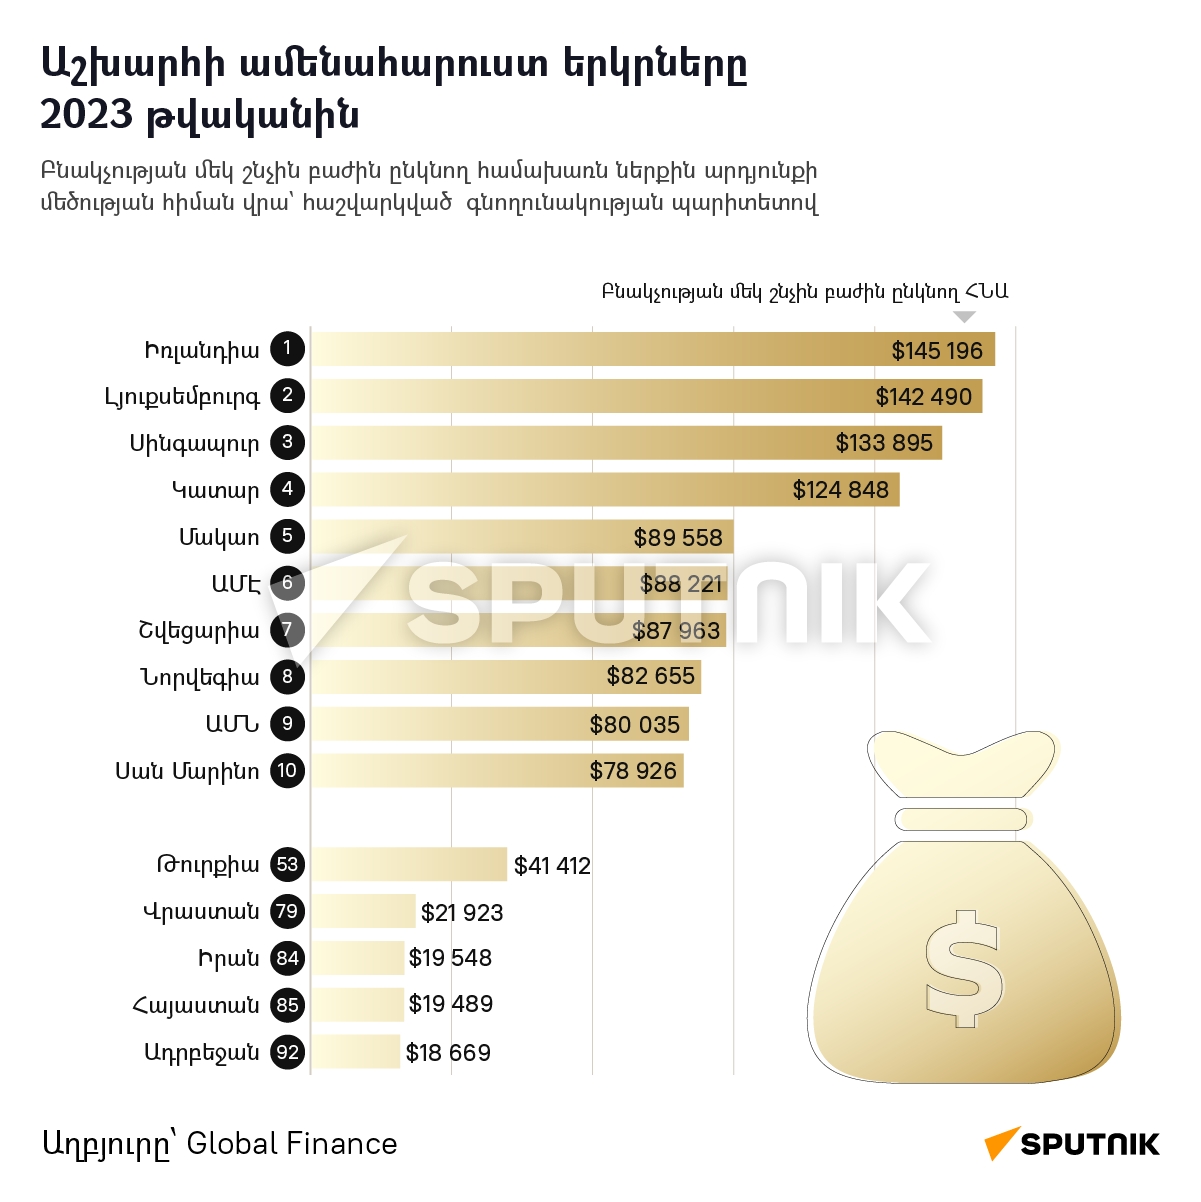 Աշխարհի ամենահարուստ երկրները 2023 թվականին - Sputnik Արմենիա